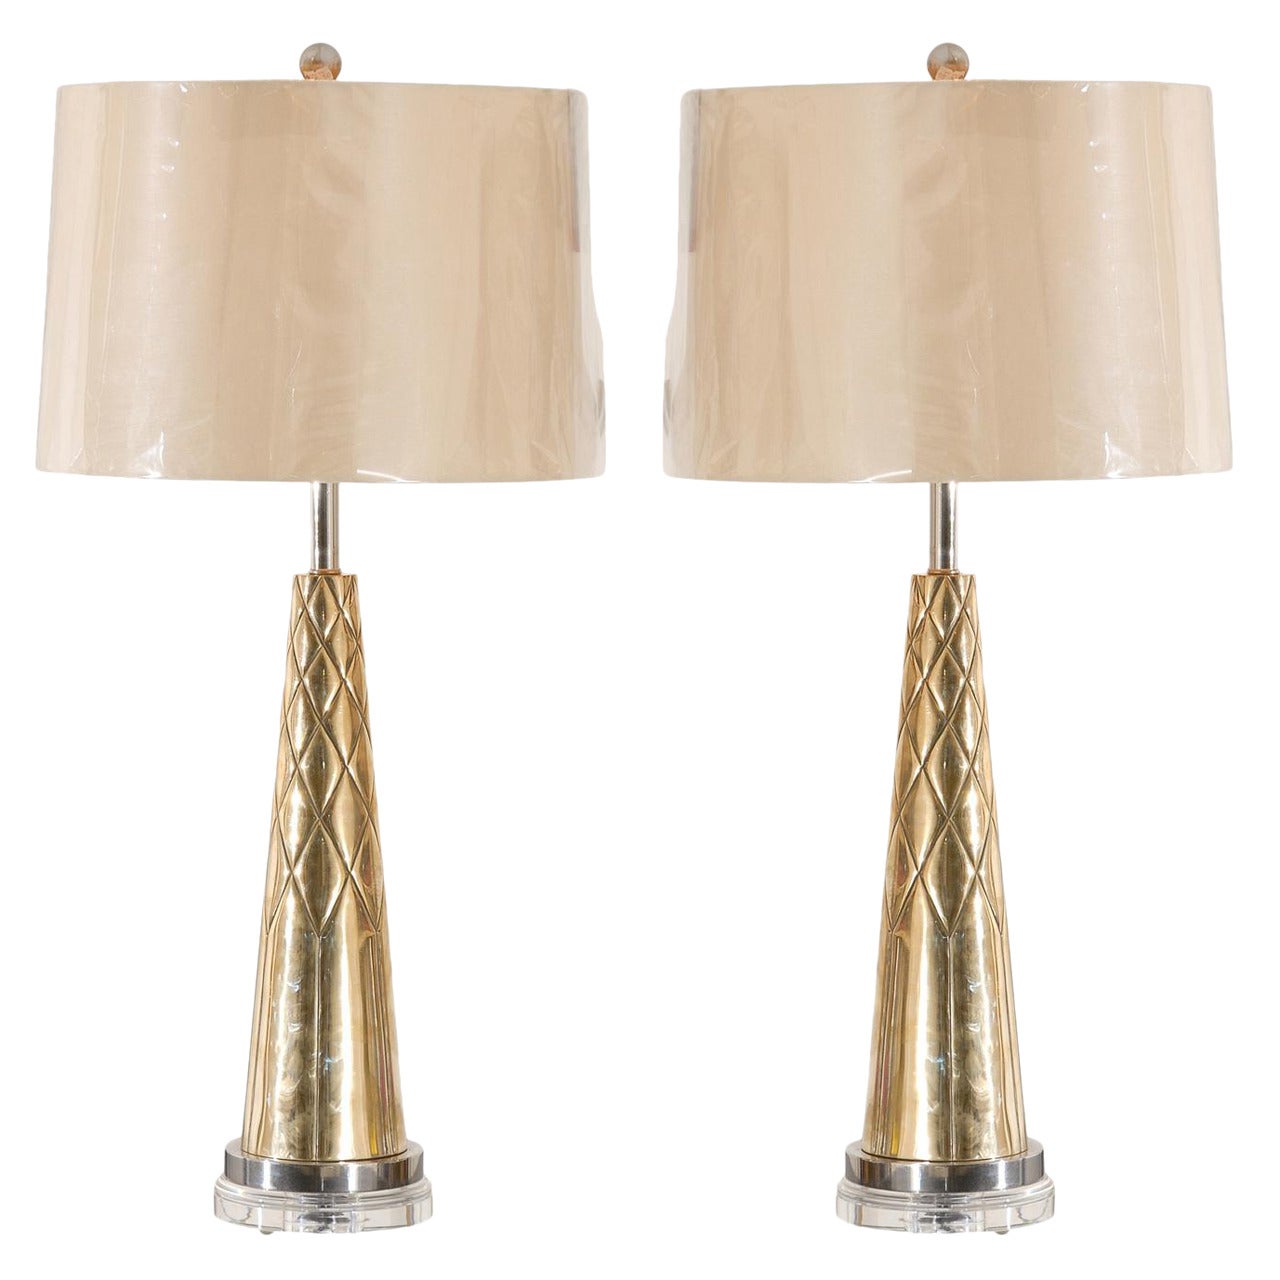 Magnifique paire de lampes modernes à cône gravées en nickel et laiton